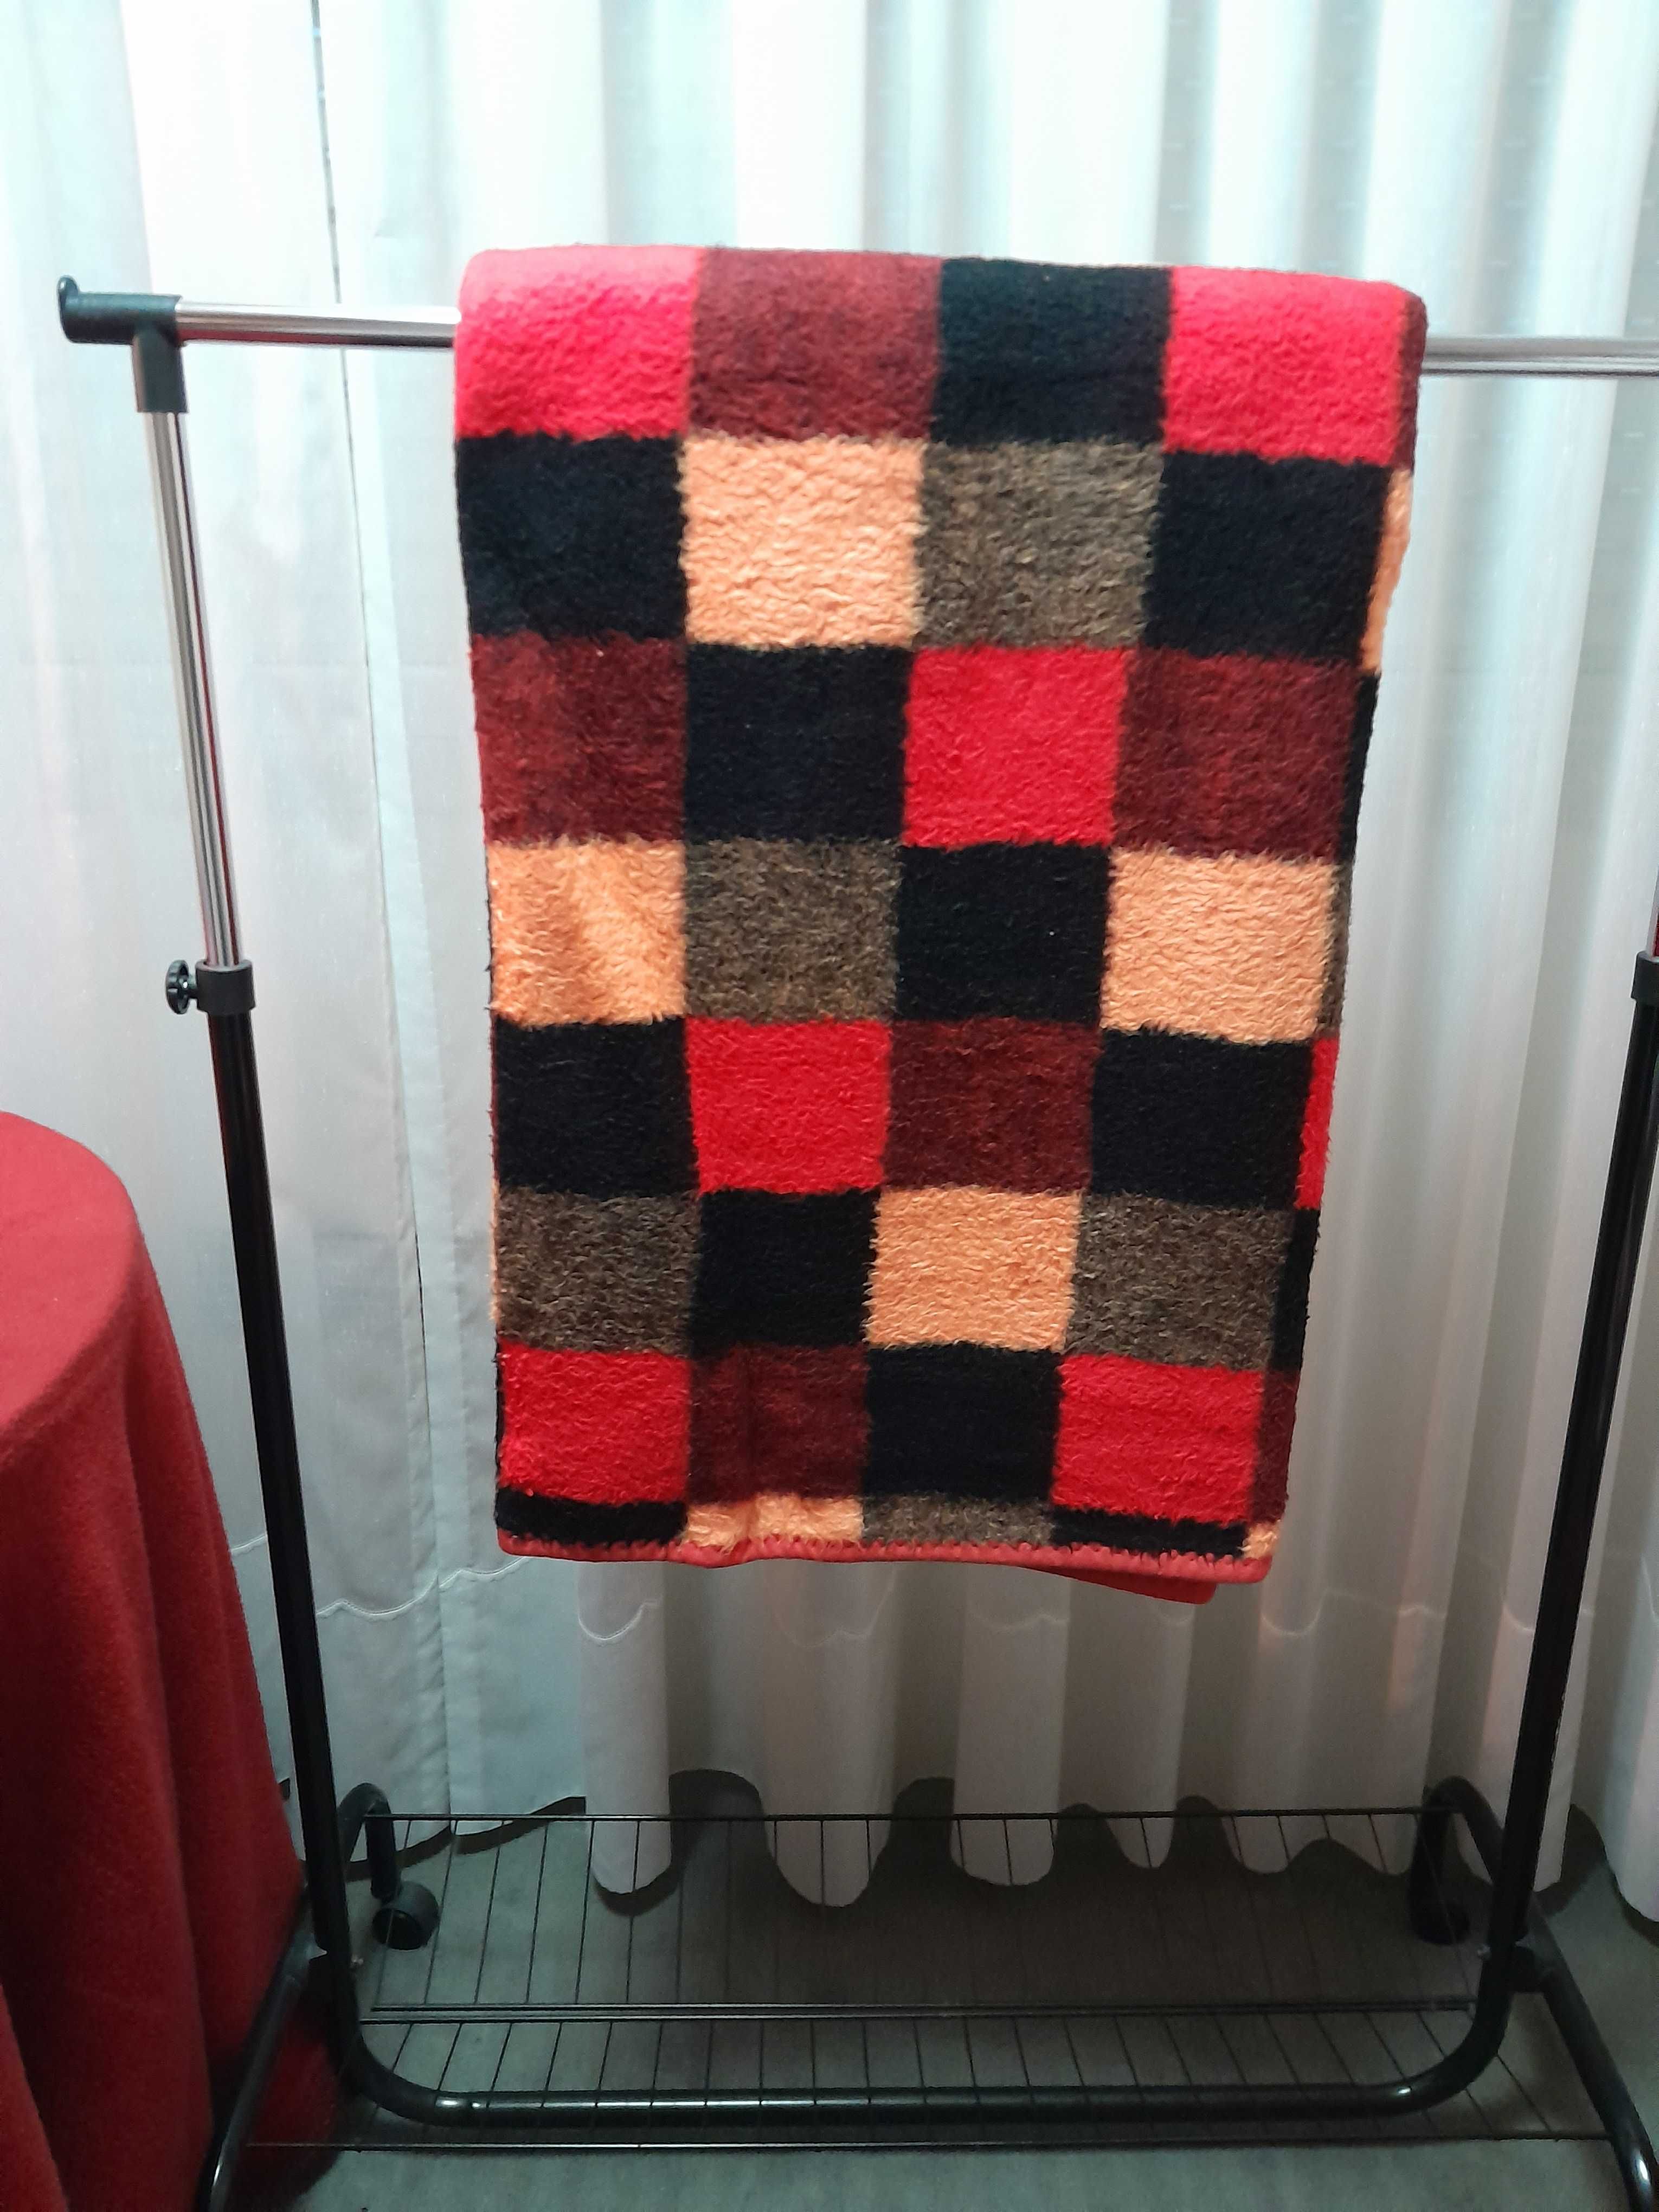 Cobertor de casal aos quadrados vermelho, laranja, etc.
Preço: 15 eur.